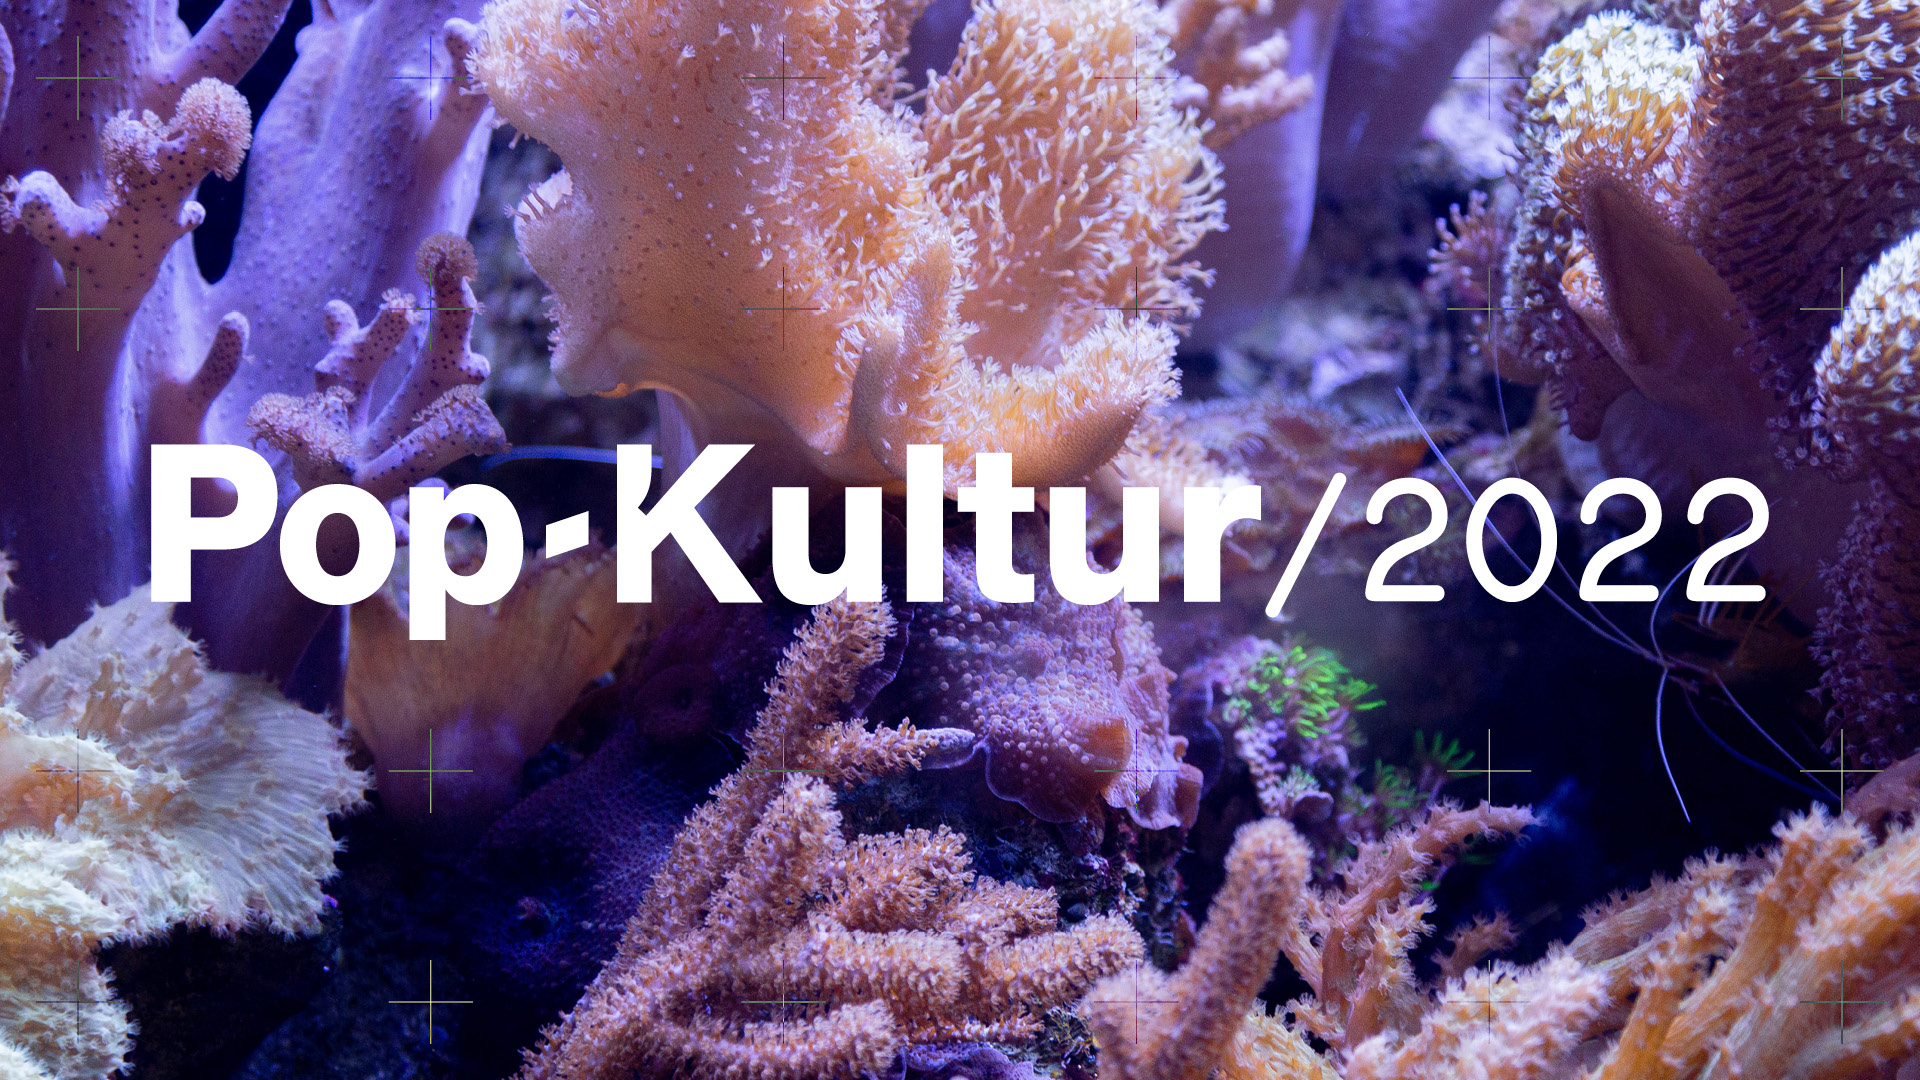 Pop-Kultur 2022 Visual: Lila-, orangefarbene Korallen im Hintergrund, im Vordergrund der Schriftzug Pop-Kultur 2022.